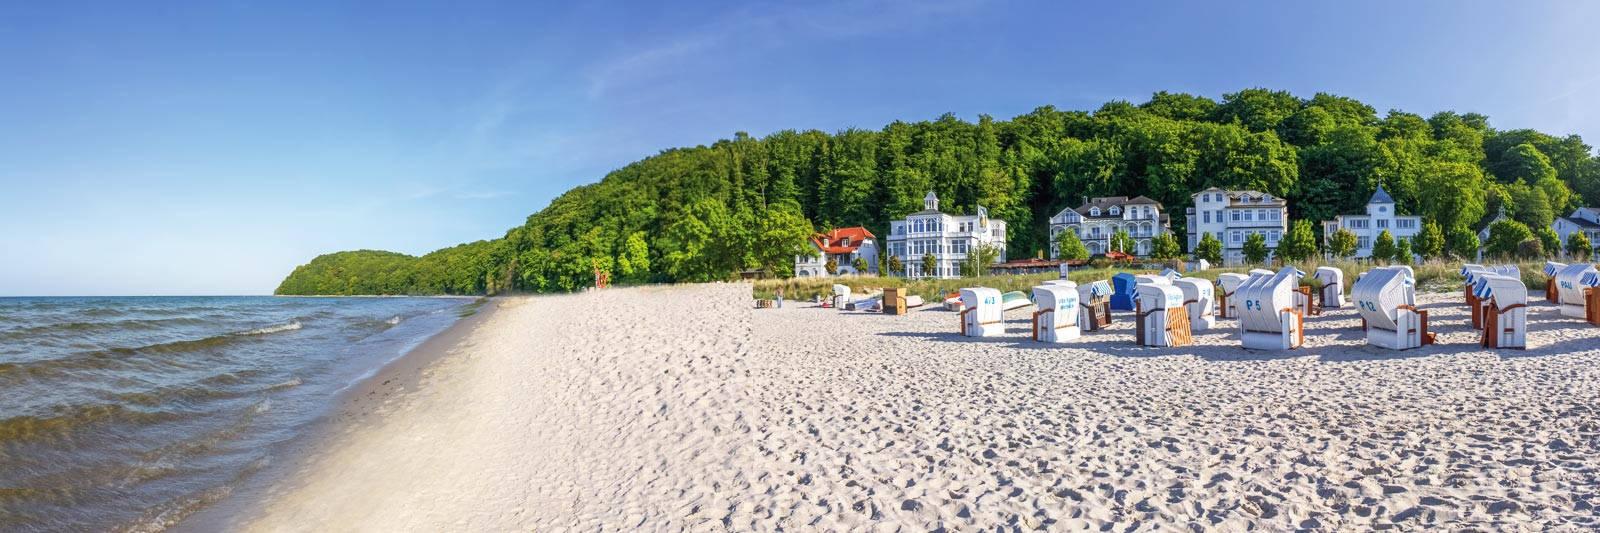 15 Ferienwohnungen und Ferienhäuser in Kritzkow - tourist-online.de